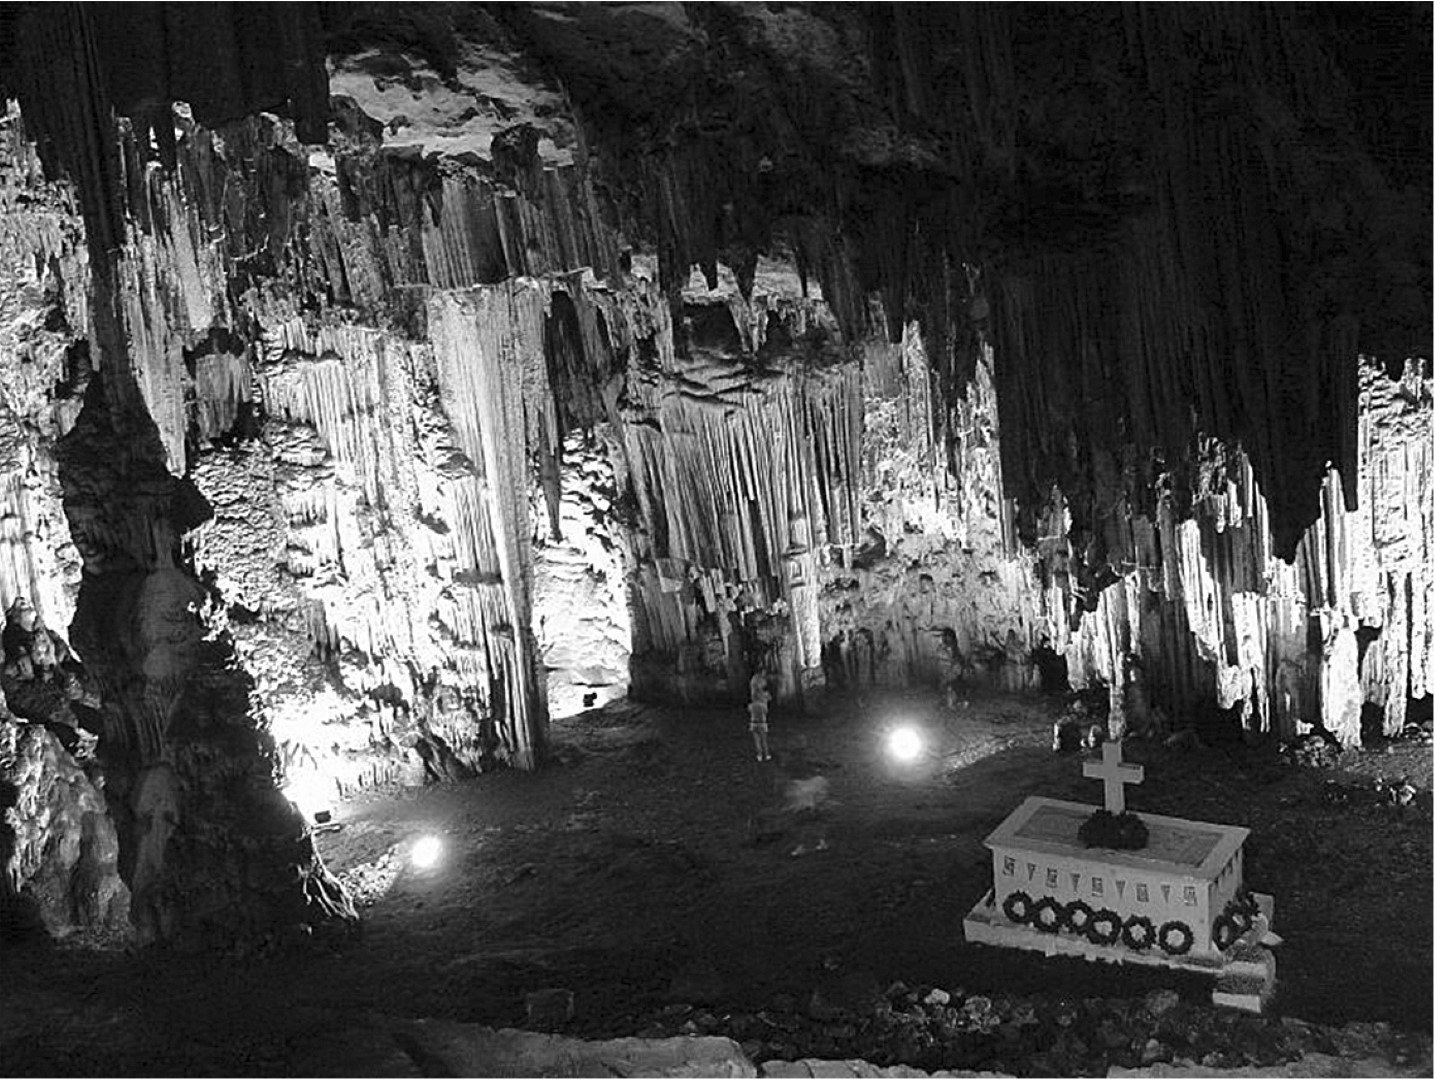 Τιμούν και μνημονεύουν το ολοκαύτωμα στο σπήλαιο Μελιδονίου